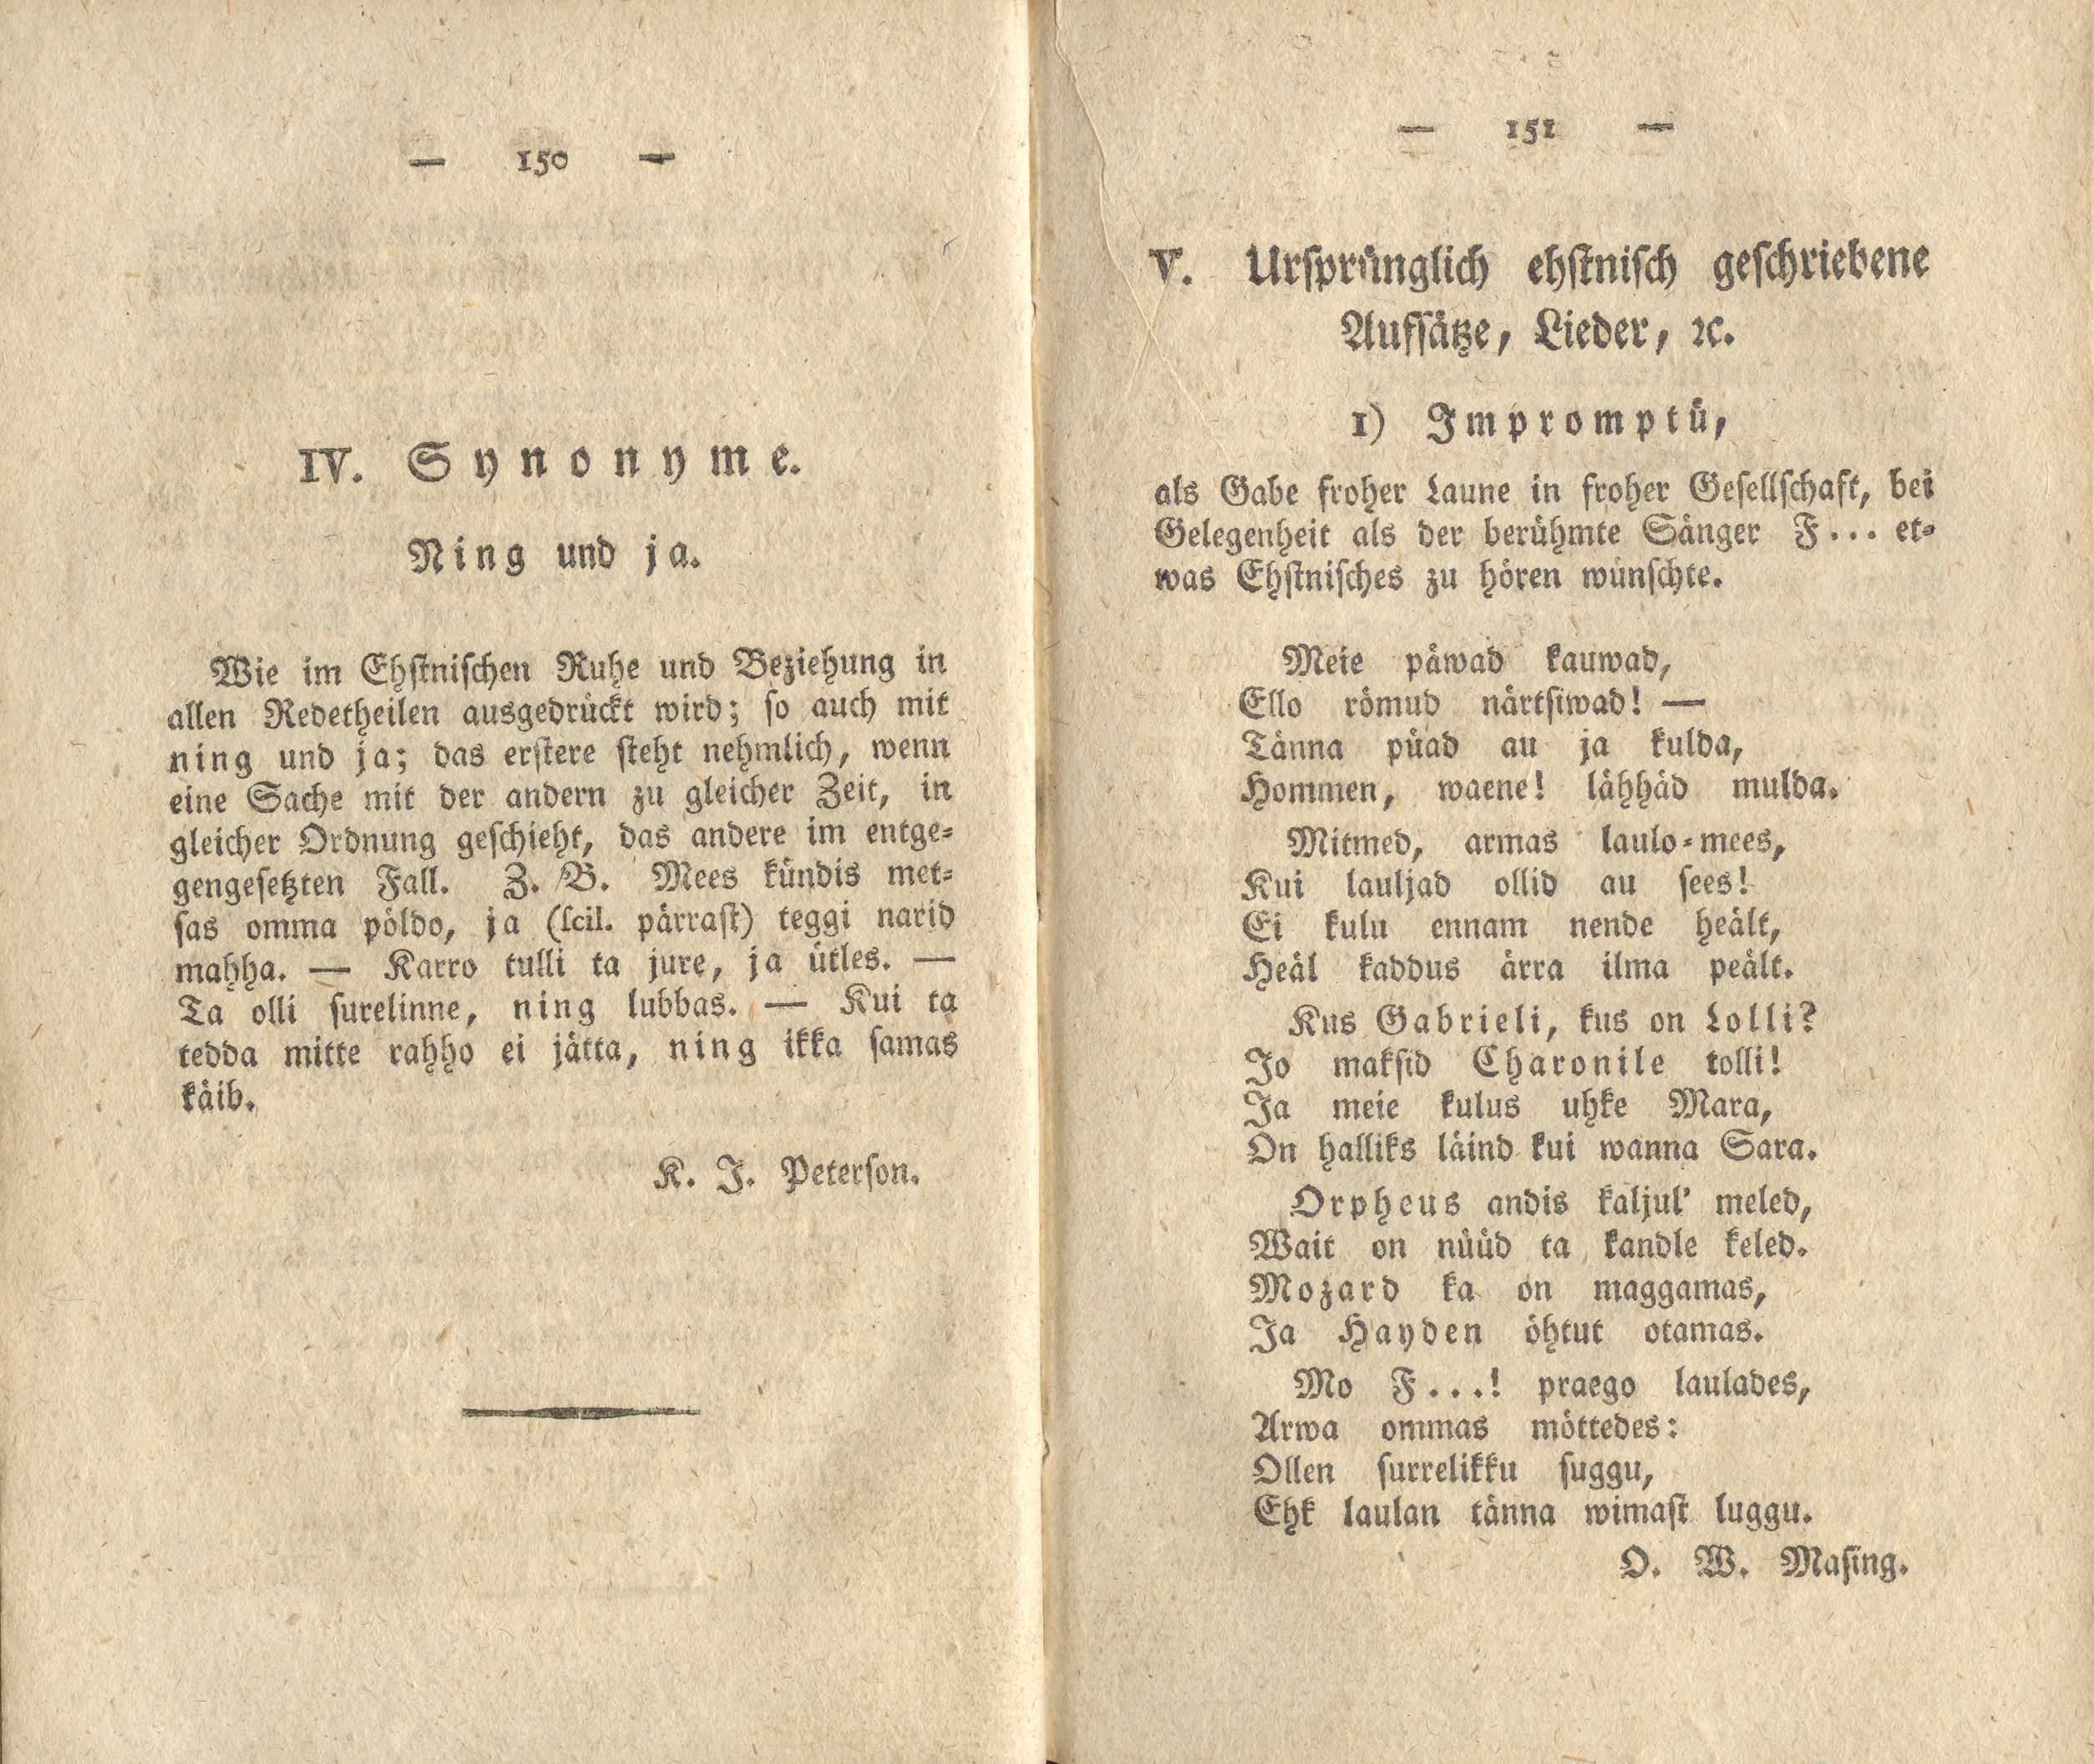 Ning und ja (1818) | 1. (150-151) Main body of text